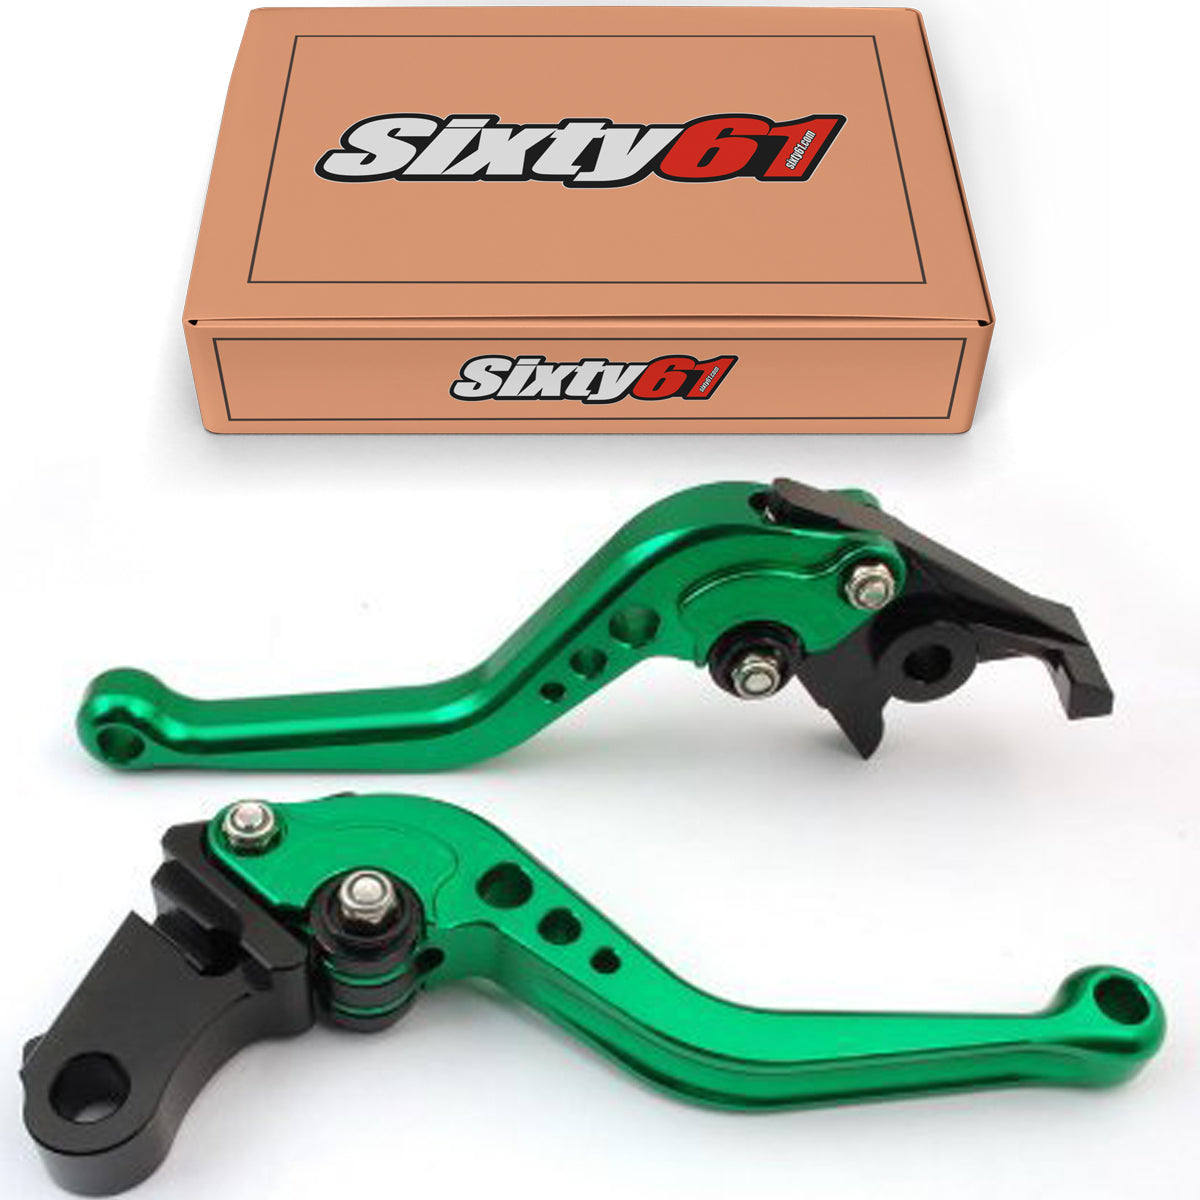 Suzuki Brake & Clutch Levers, Green Shorty Adjustable